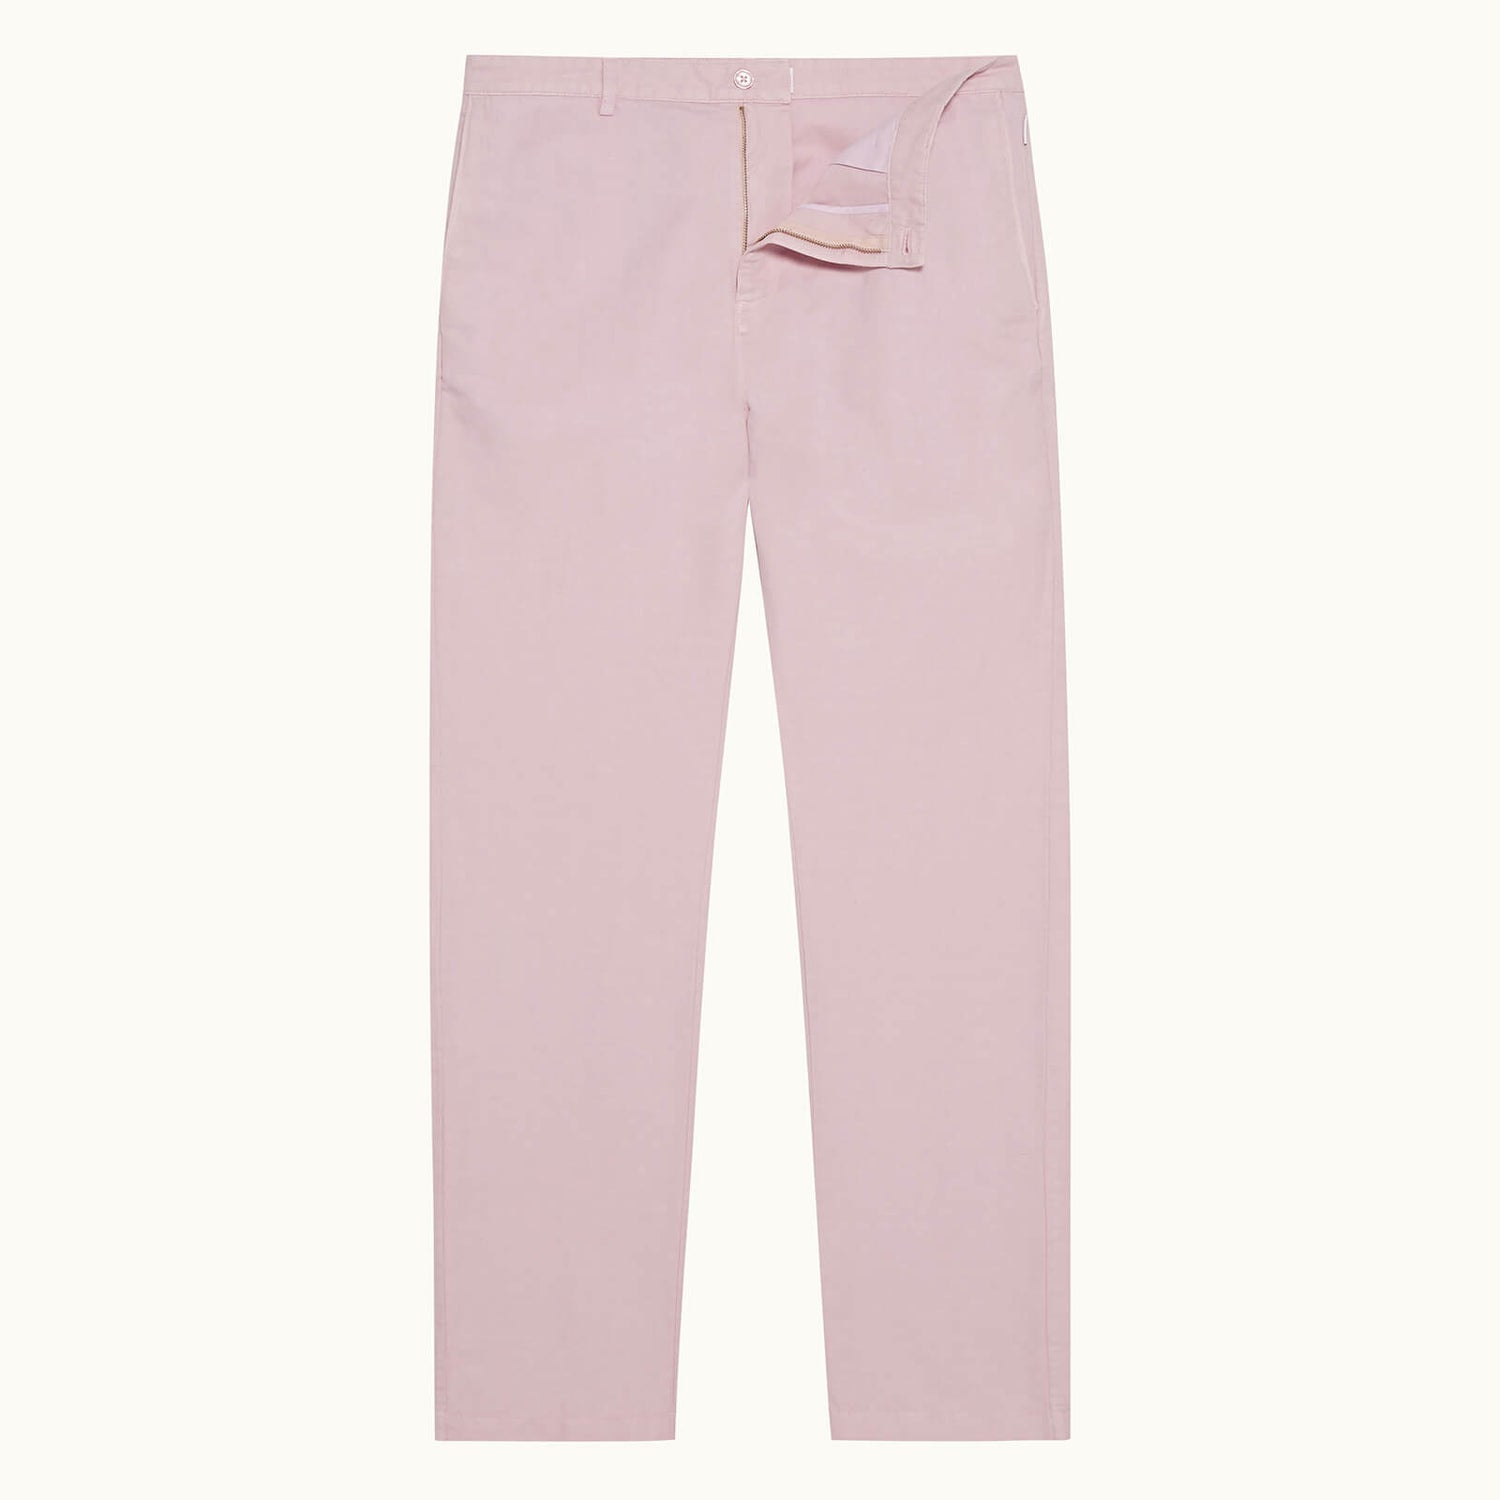 Orlebar Brown Men's Alexander GD Cotton Linen - Conch Pink